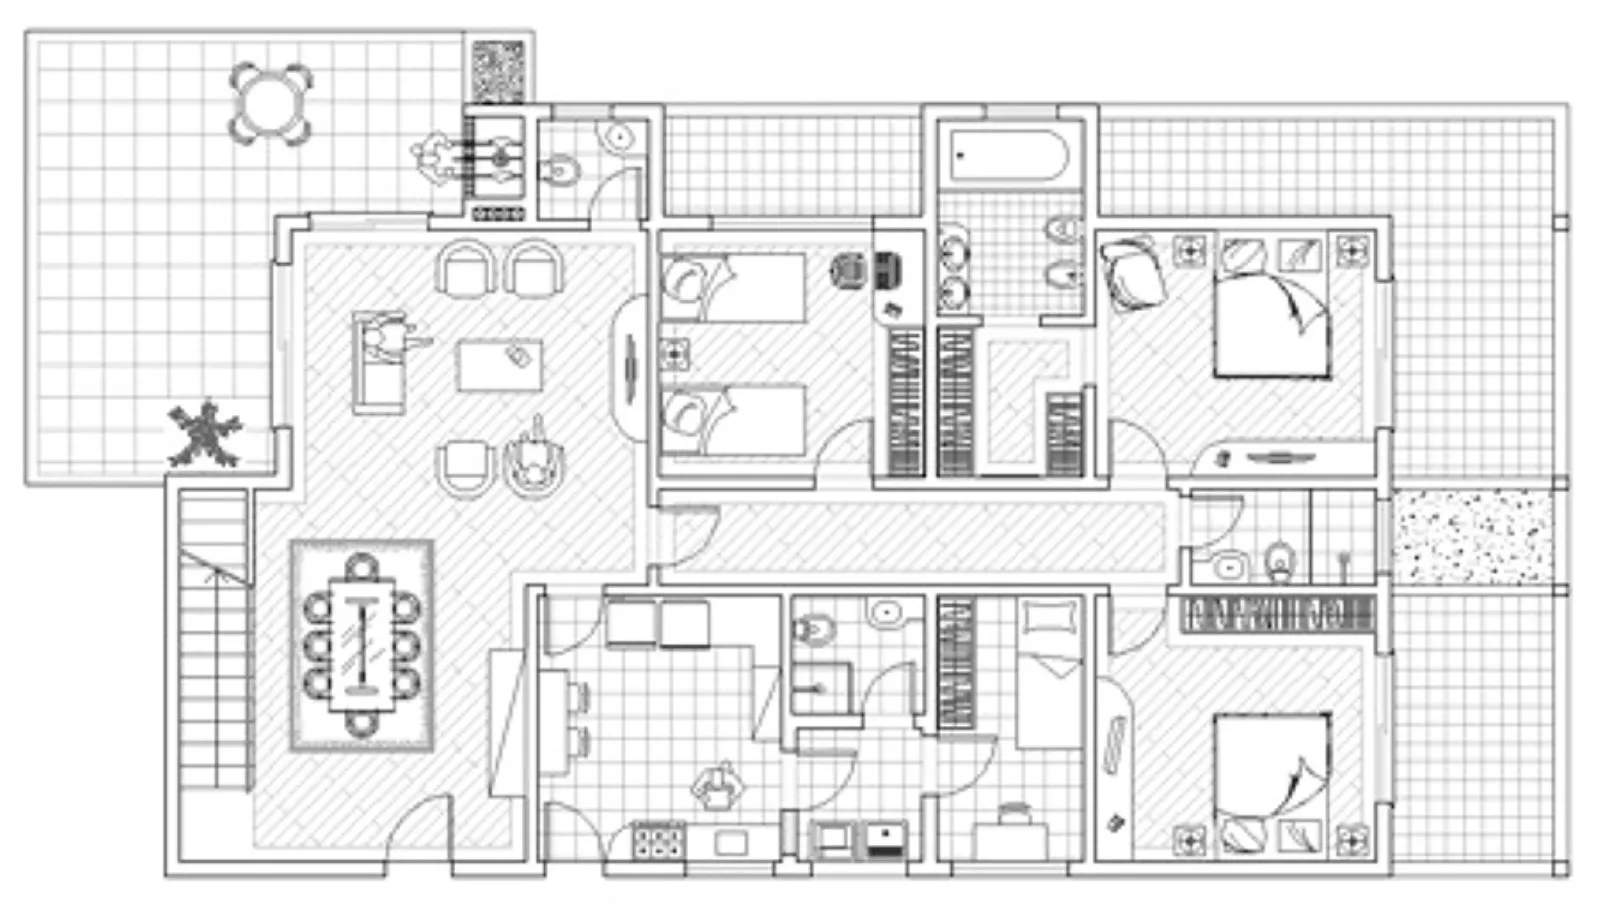 Planimetria casa come realizzarla progettazione casa for Disegno pianta casa